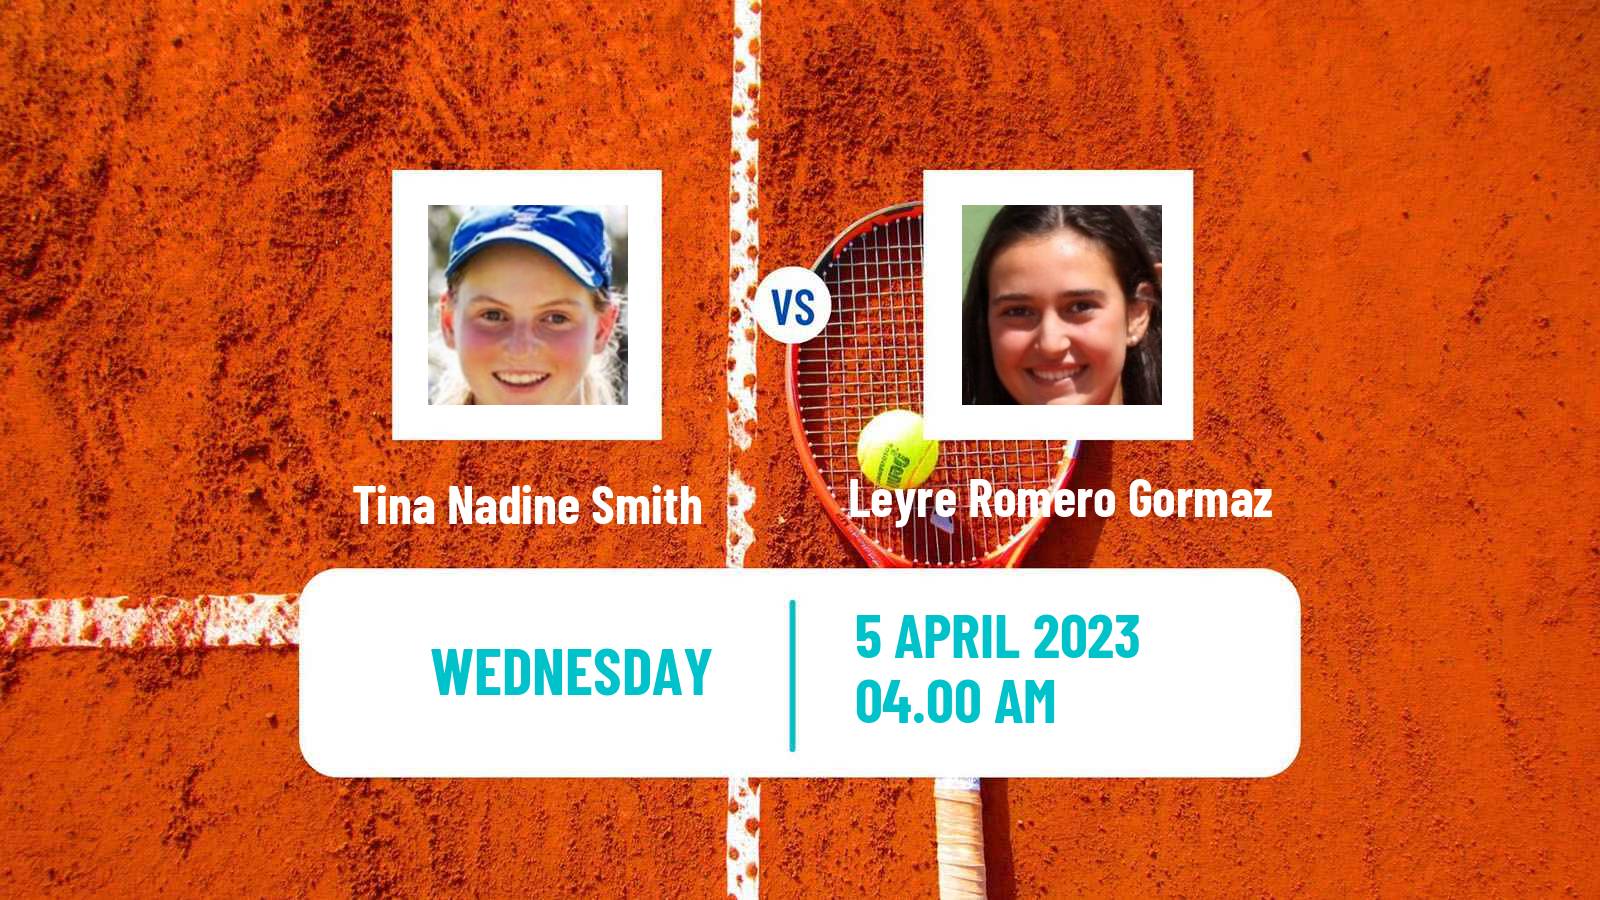 Tennis ITF Tournaments Tina Nadine Smith - Leyre Romero Gormaz